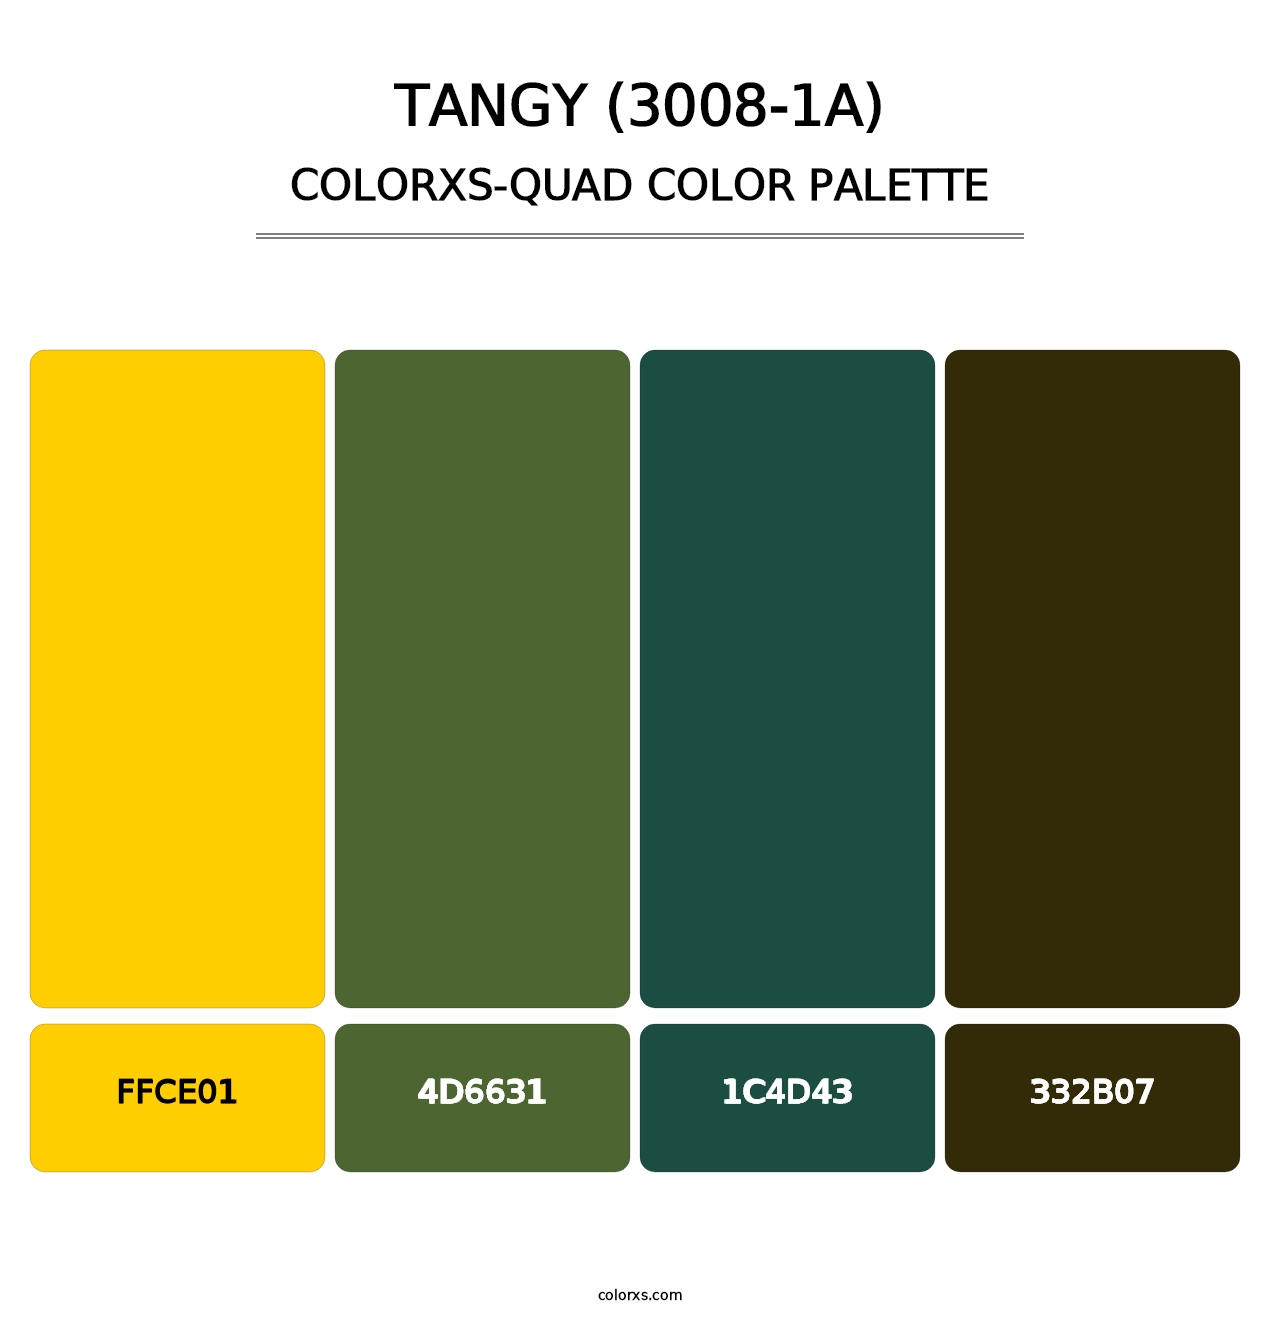 Tangy (3008-1A) - Colorxs Quad Palette